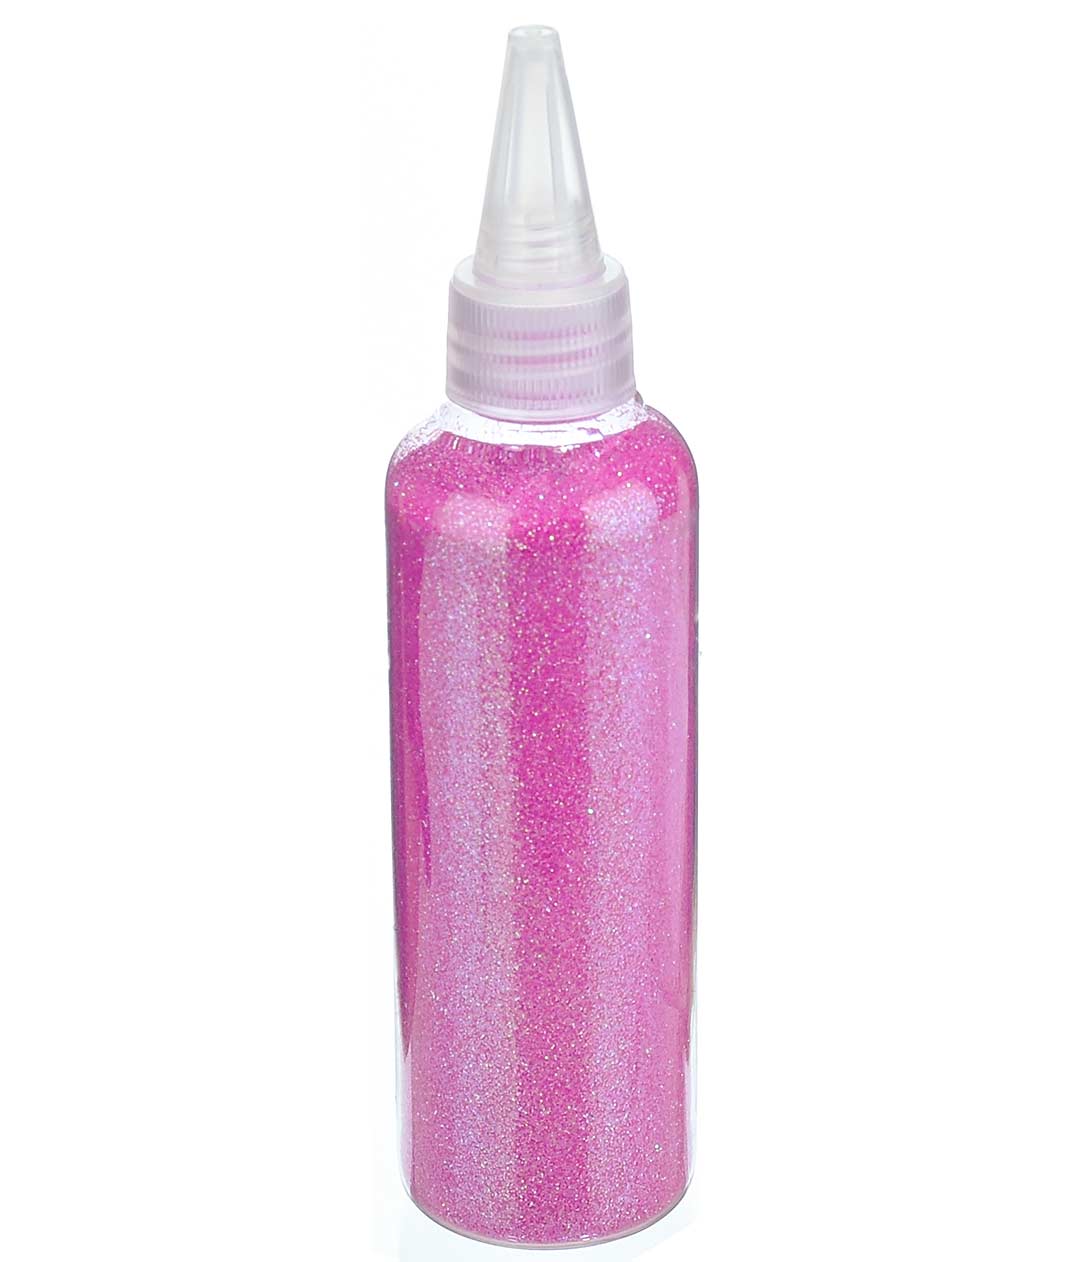 Изображение Присыпка для цветов розовая в бутылочке 80гр.